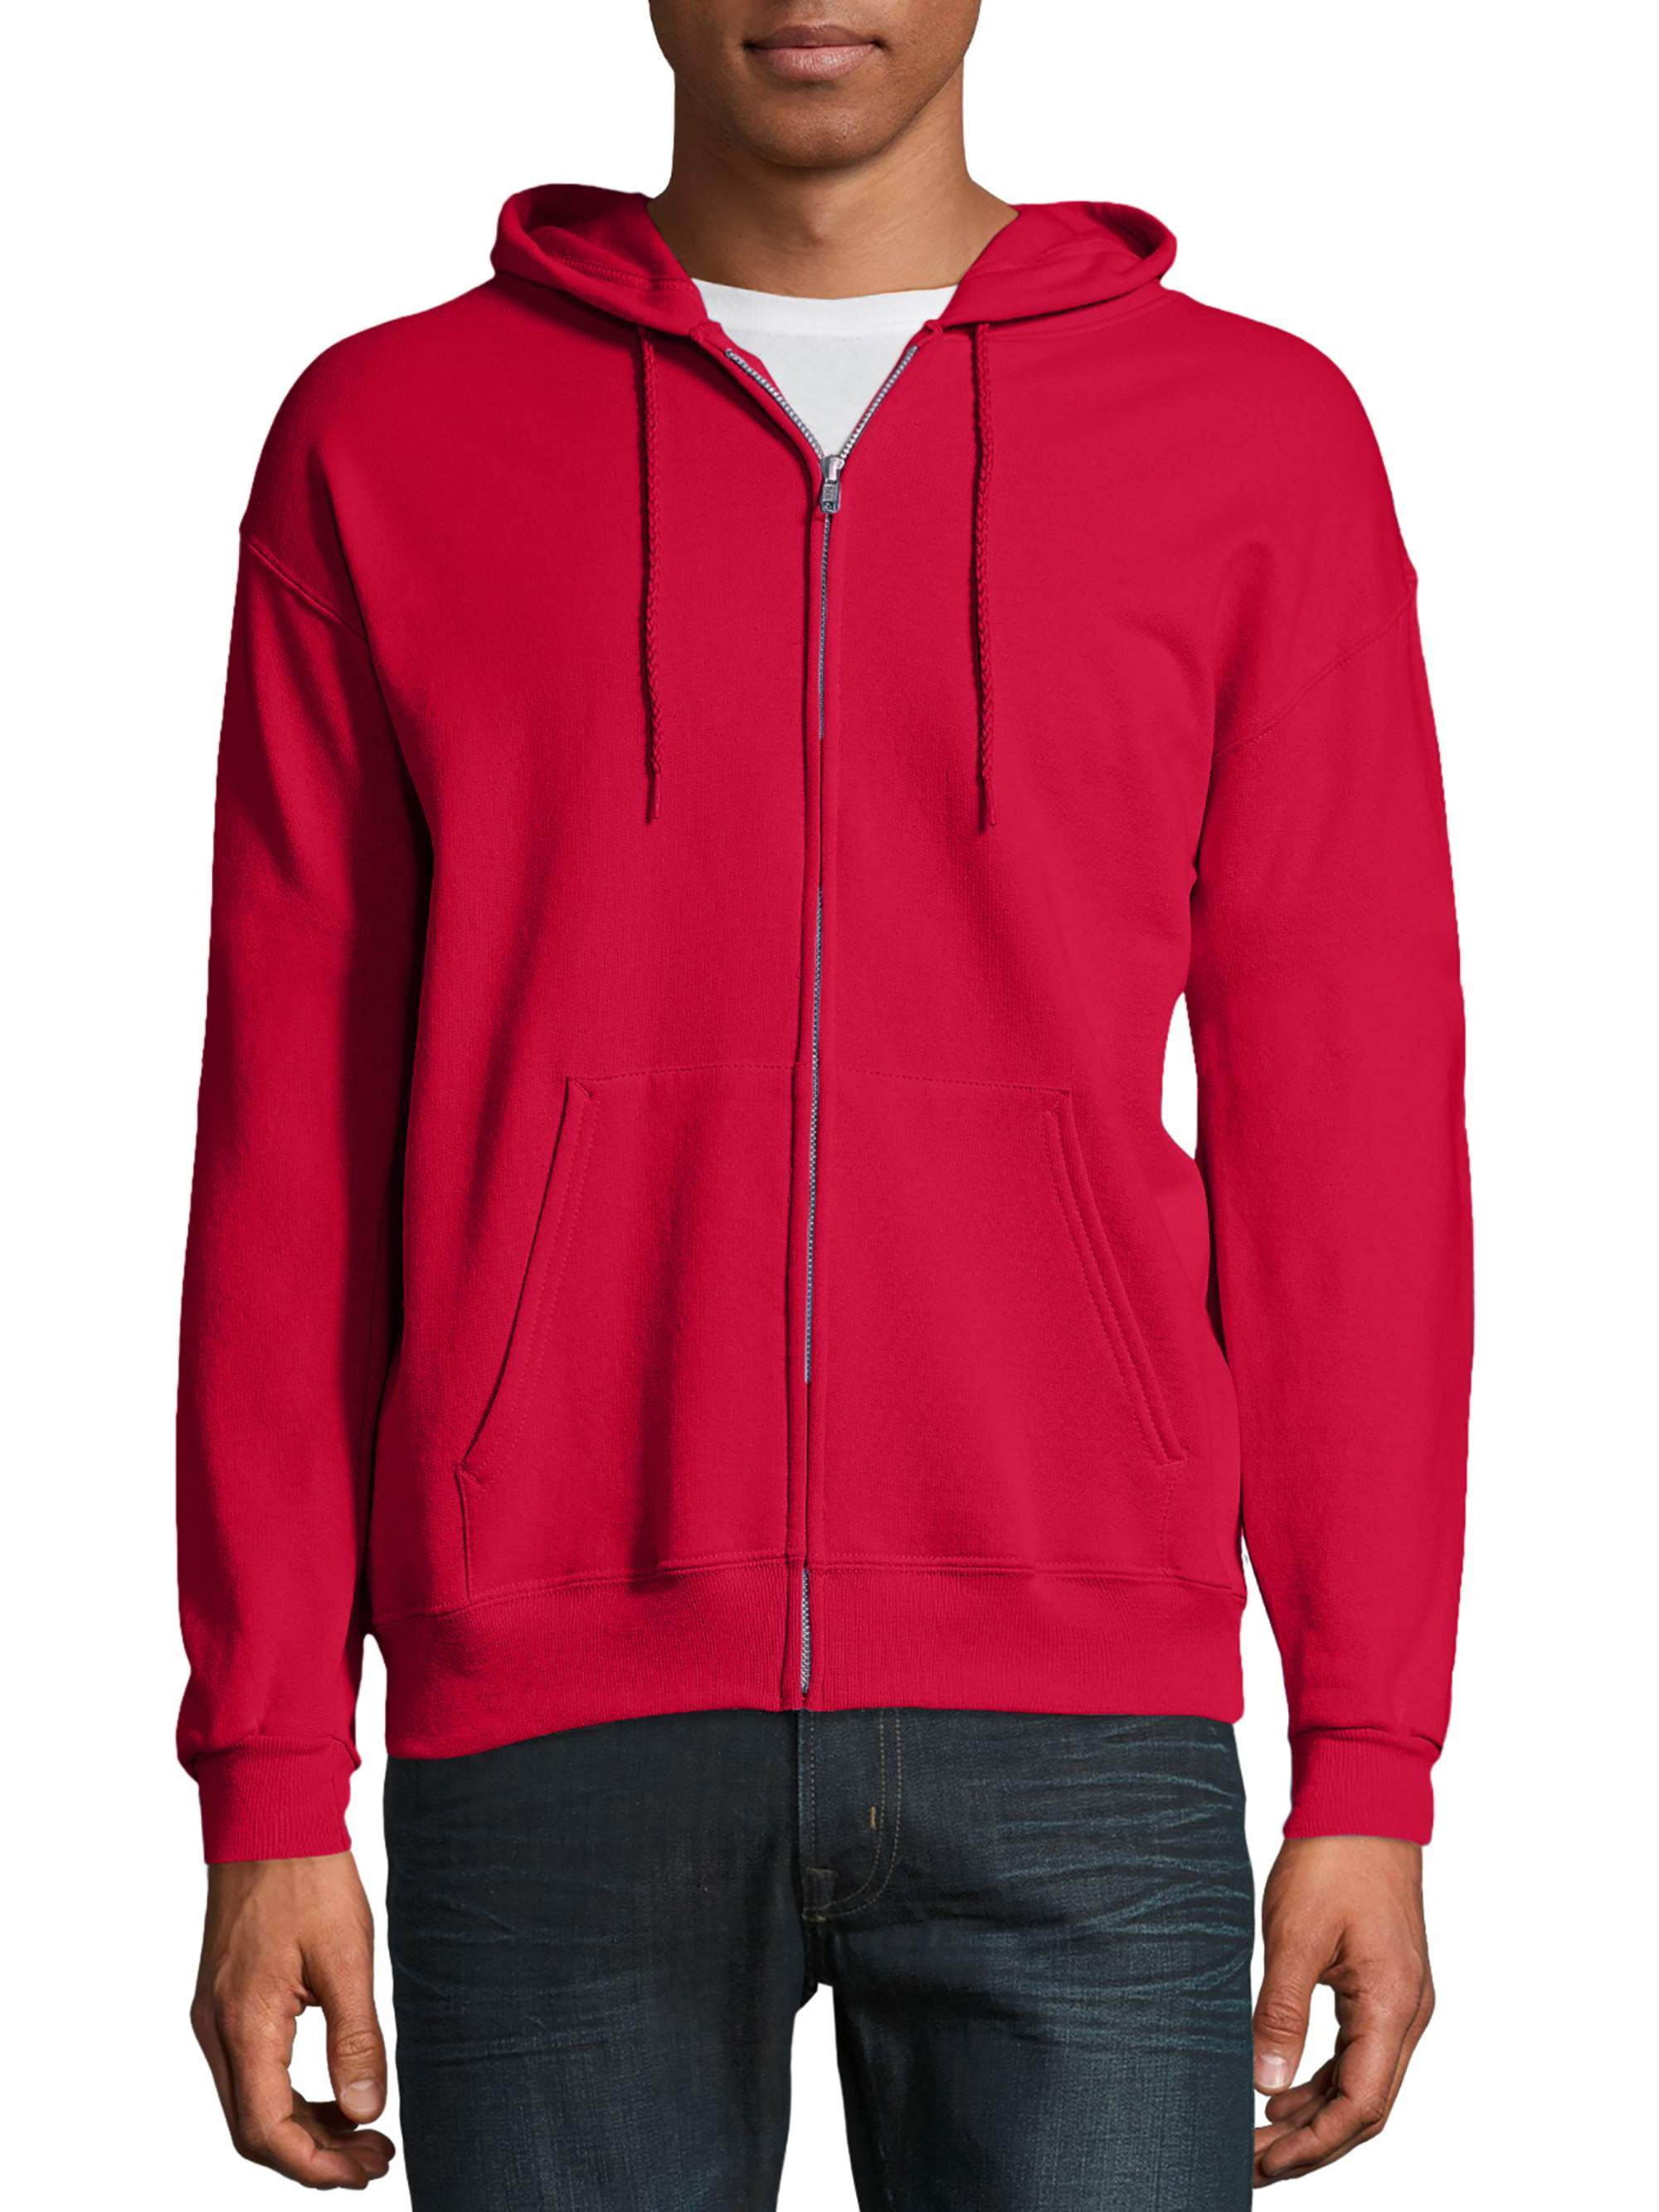 Red Mens Zip-up Sweatshirts \u0026 Hoodies 